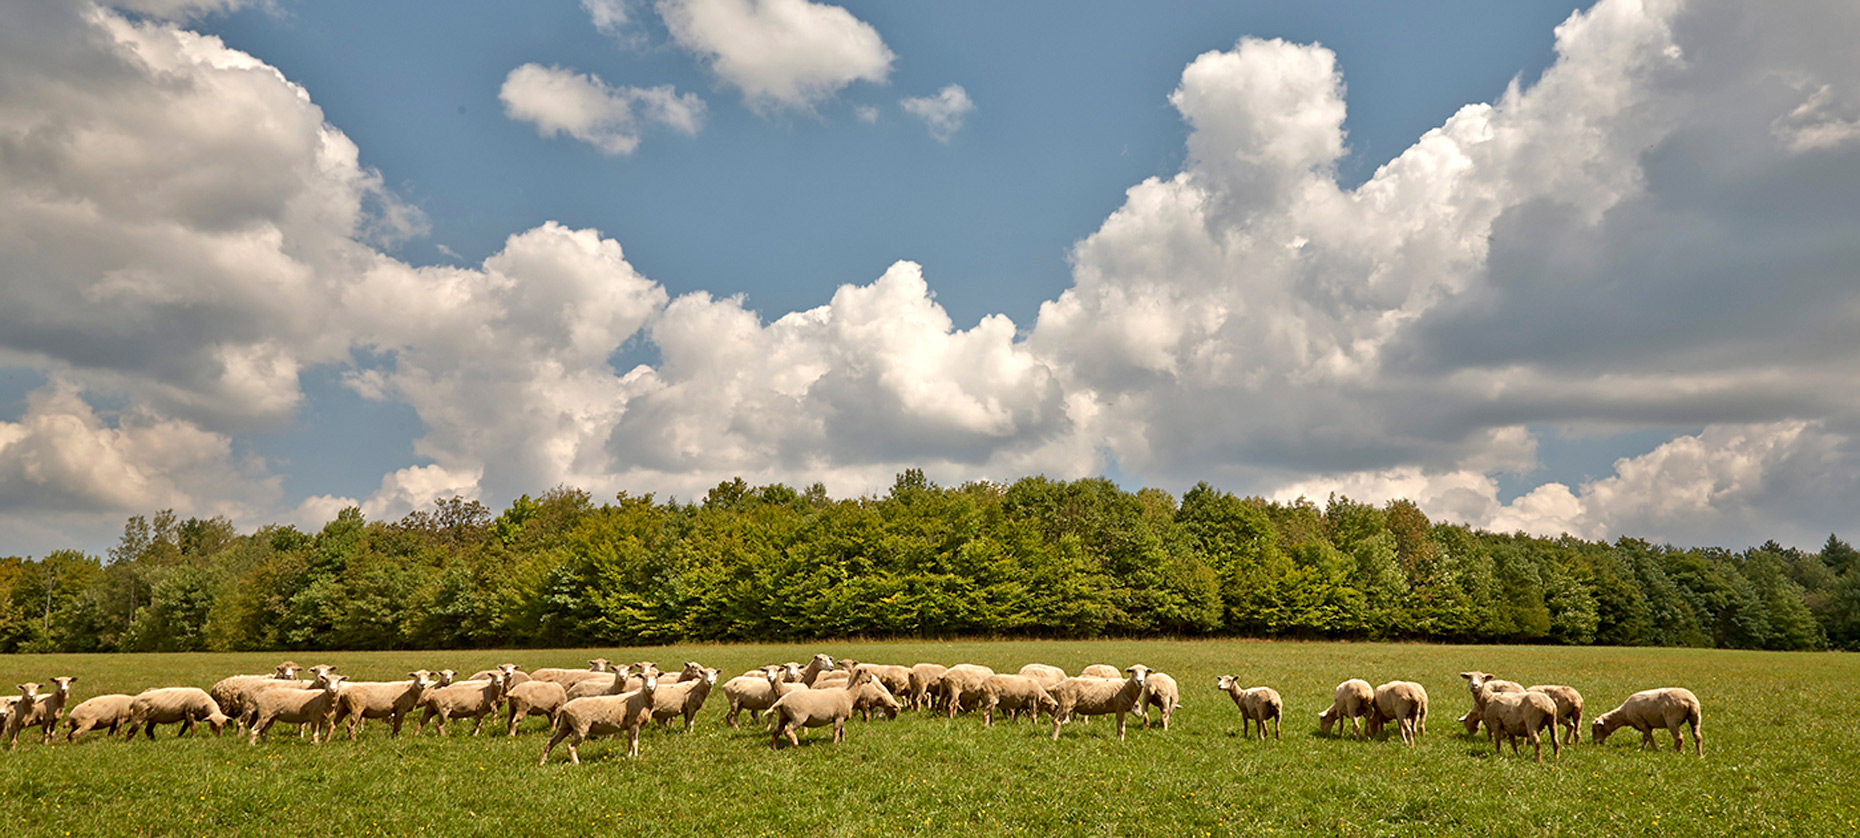 sheep-in-field